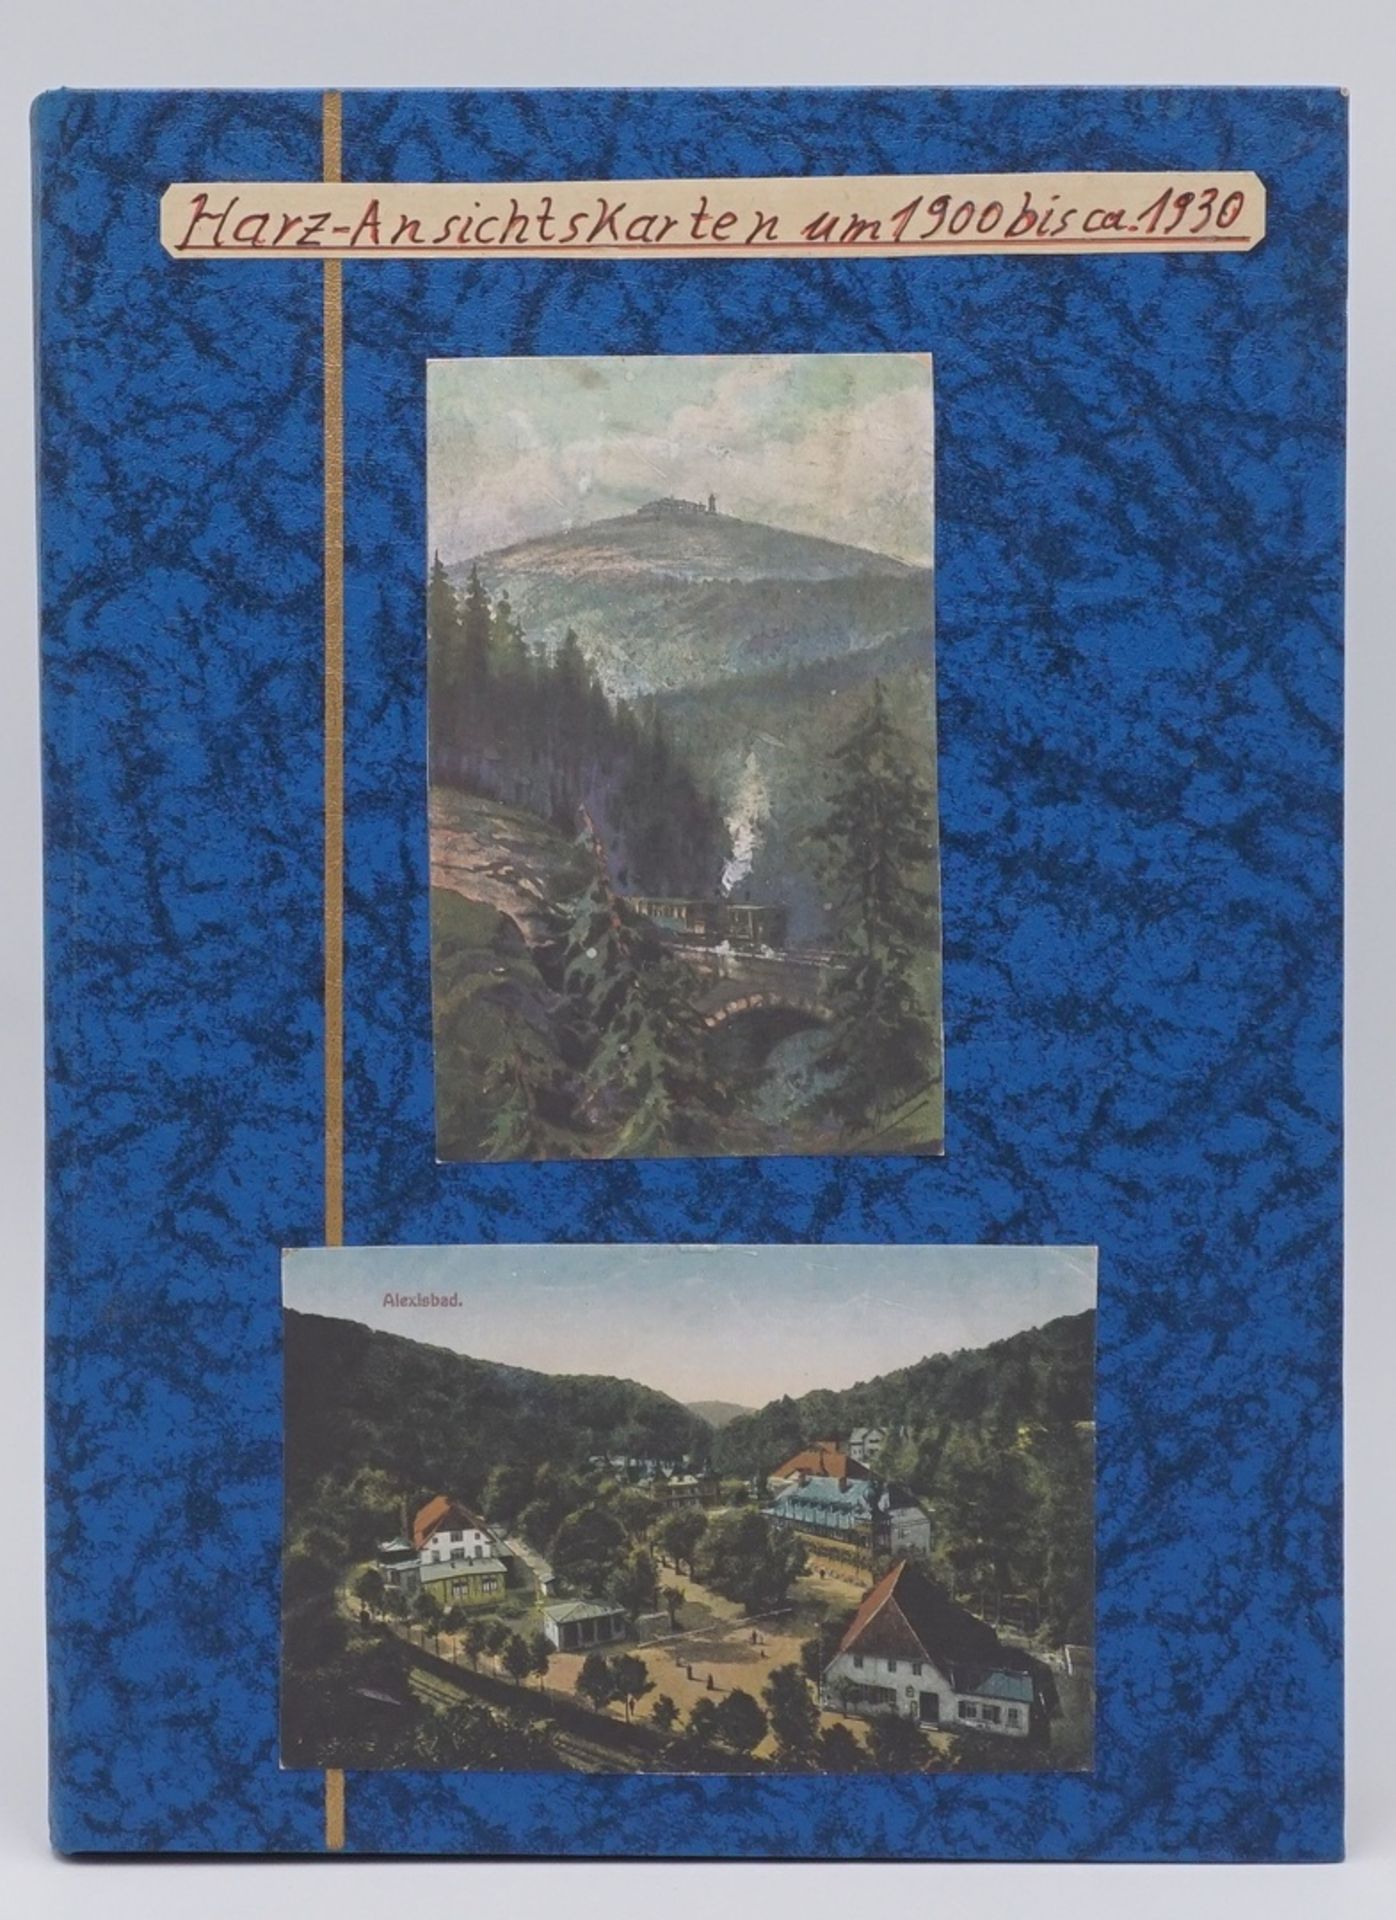 64 Harz Ansichtskarten / Postkartenum 1900 bis ca. 1930, eingelegt in Steckalbum, unter anderem - Image 3 of 3